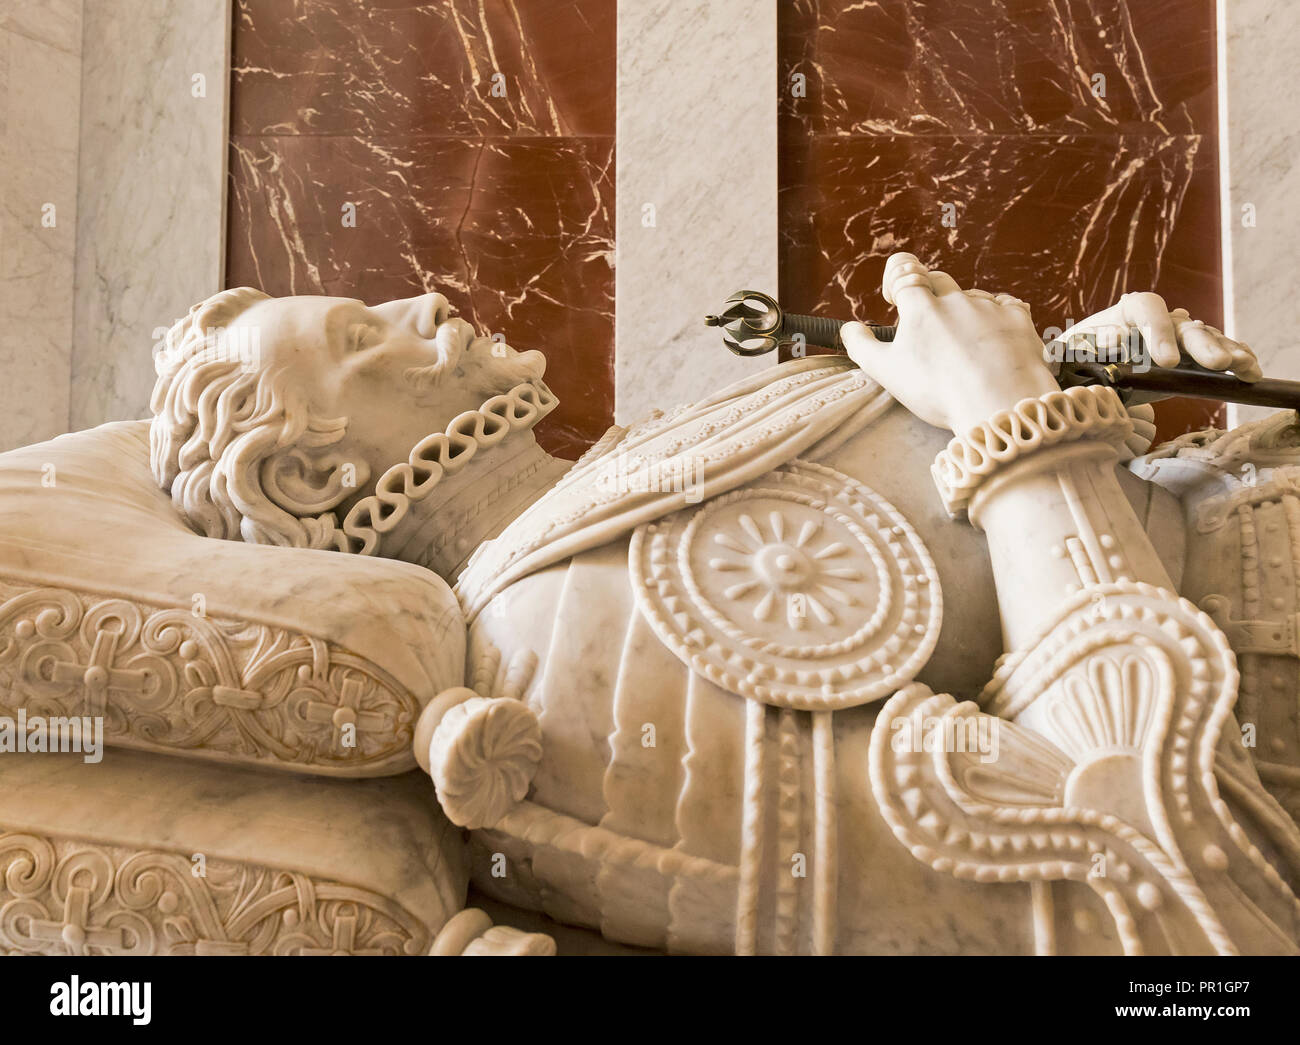 San Lorenzo de El Escorial, provincia de Madrid, España. Efigie de Juan de Austria (Juan de Austria), 1547-1578, sobre su tumba, en el monasterio de El Escori Foto de stock